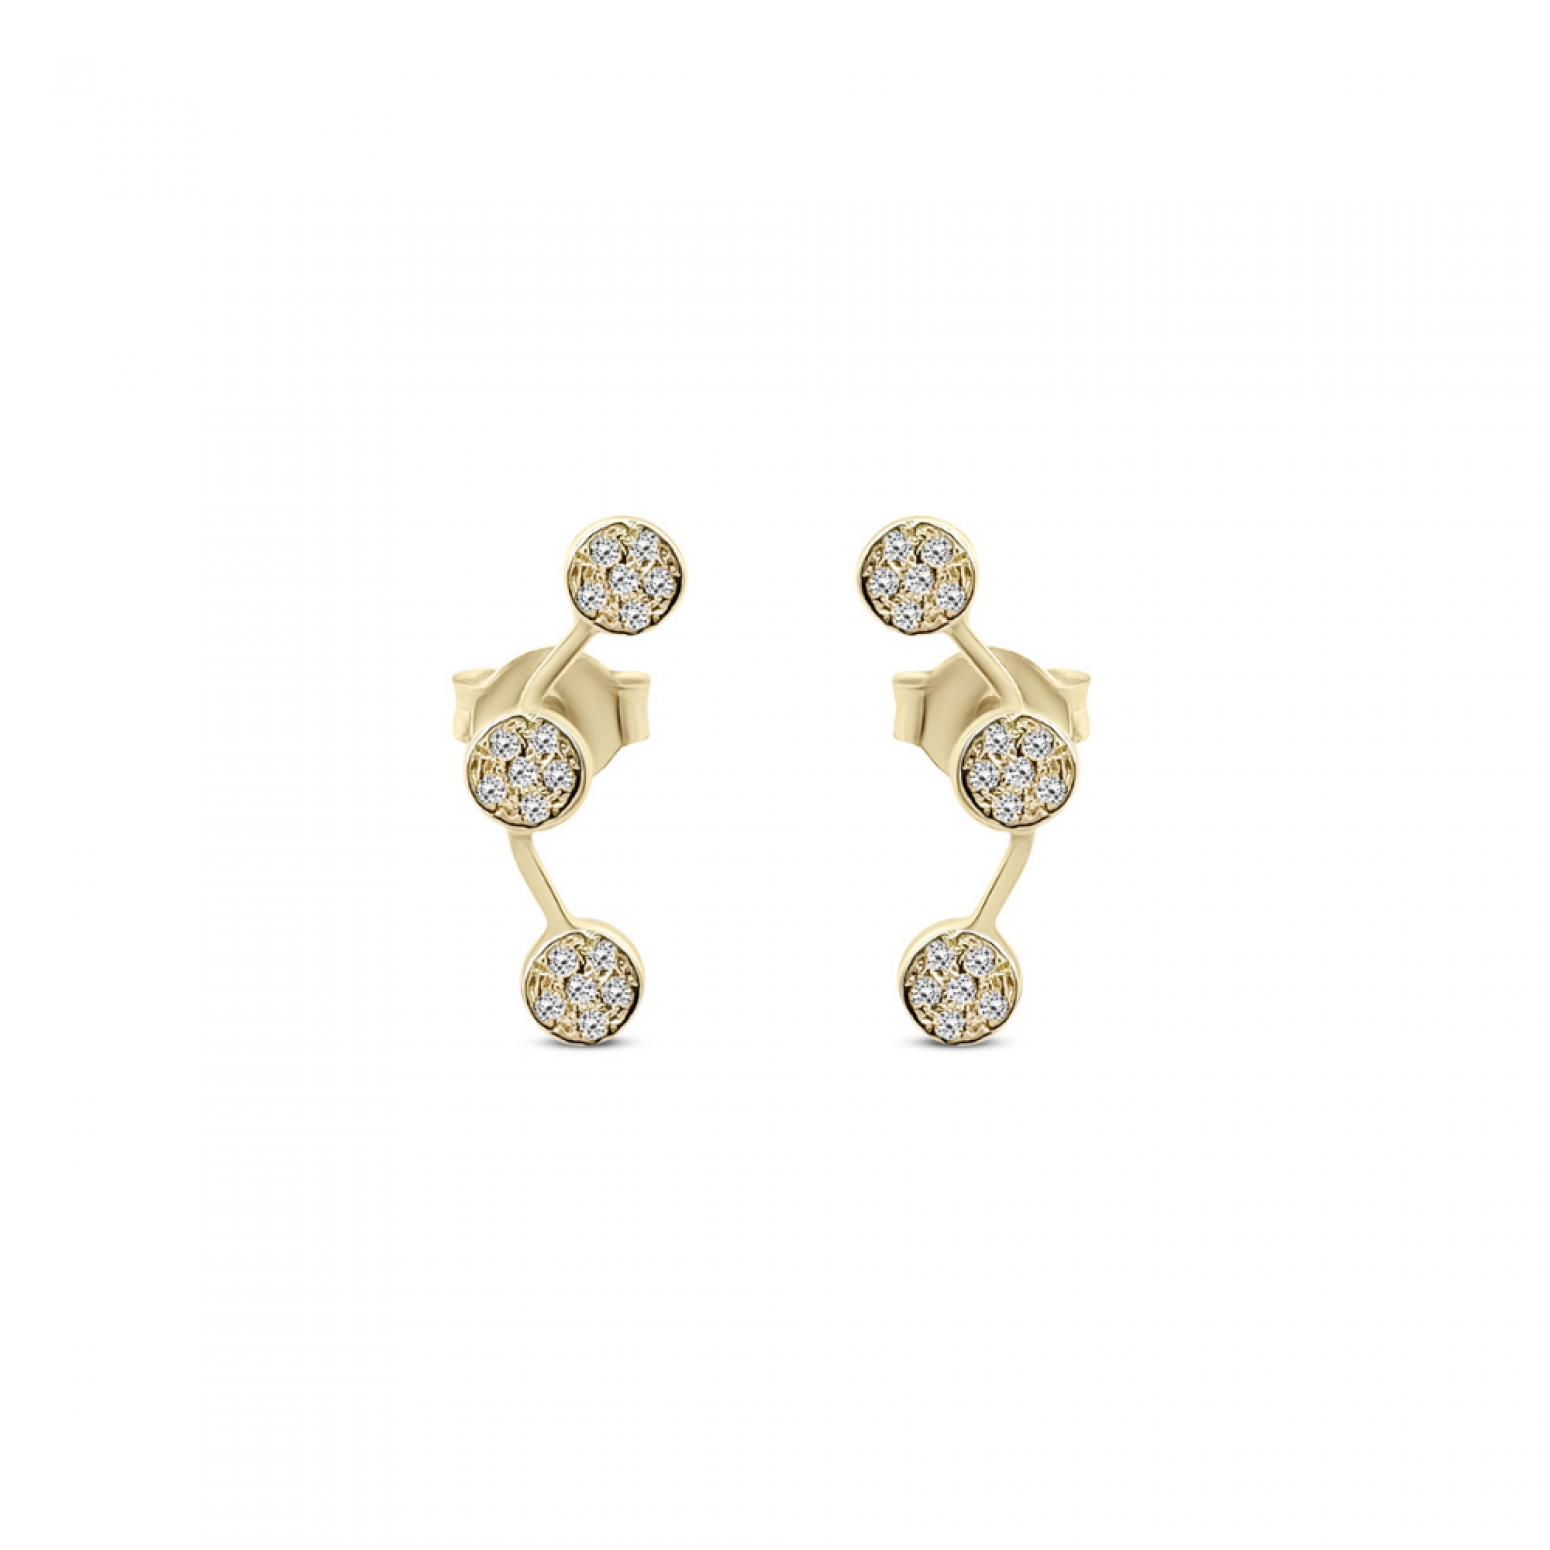 Earrings K9 gold with zircon, sk4120 EARRINGS Κοσμηματα - chrilia.gr